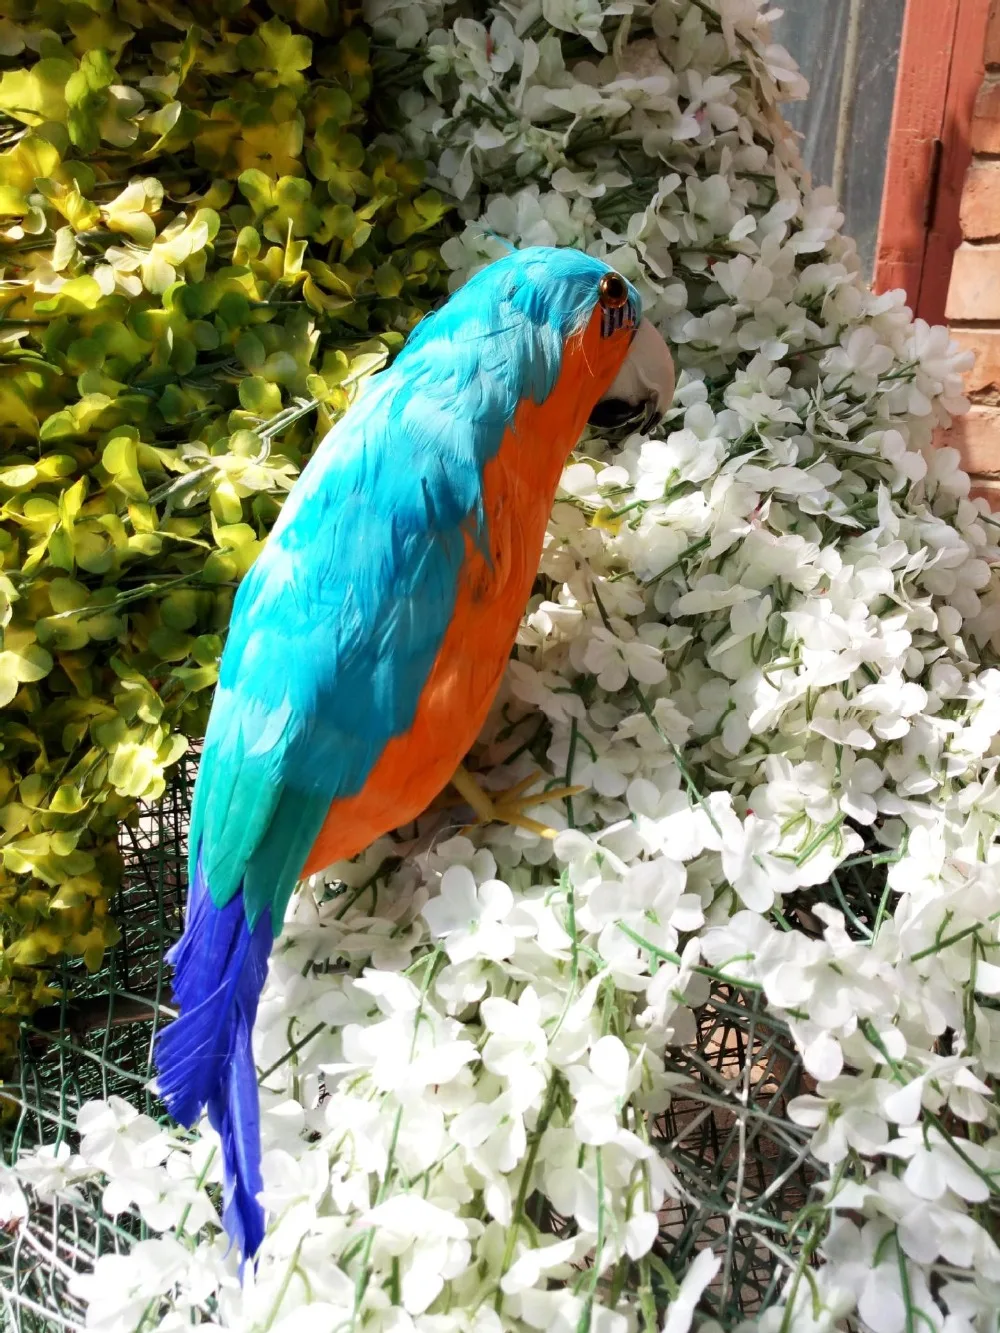 

Большие 40 см синие цветные перья птица искусственный попугай модель пены и перья пасторальное Рукоделие украшение для дома подарок a1998